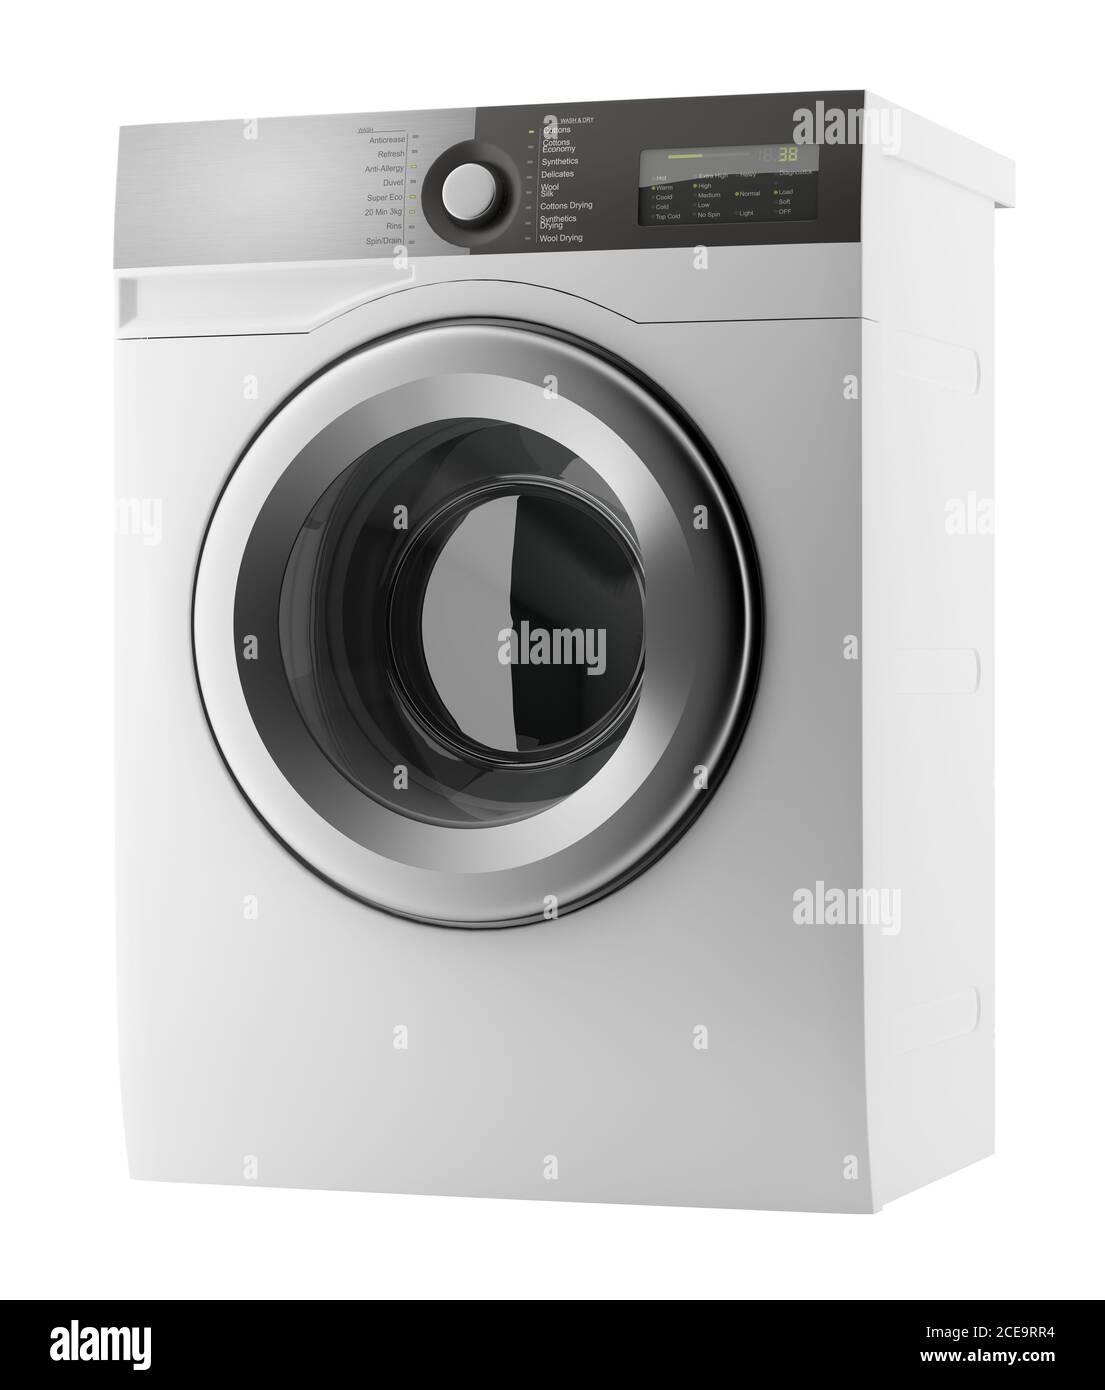 modern washing machine isolated on white background Stock Photo